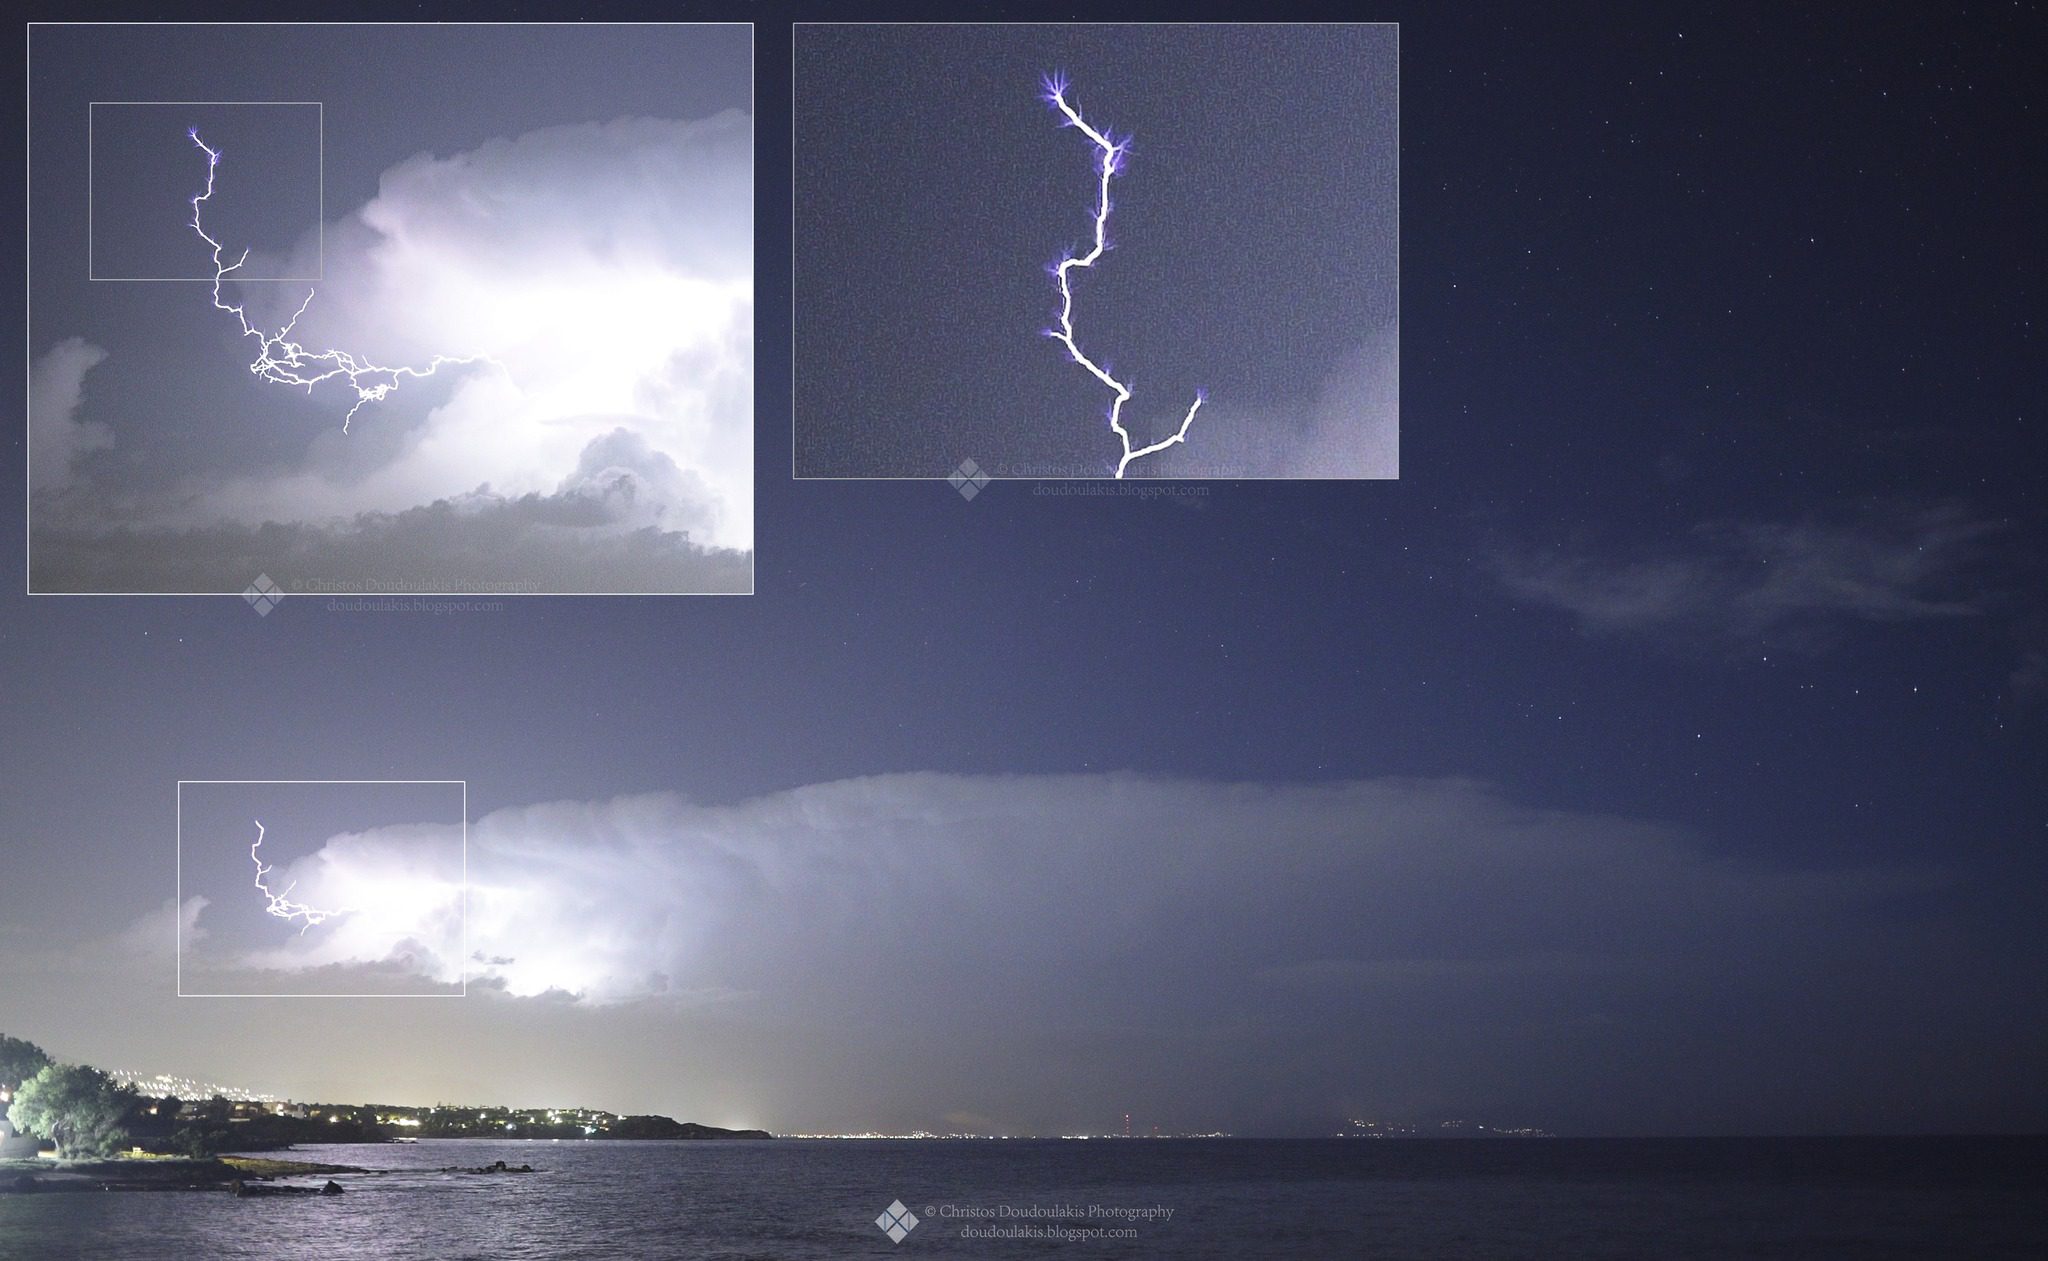 Σε αυτές τις δυο εικόνες, βλέπουμε την εξέλιξη ενός κεραυνού νέφους-αέρα (δηλαδή... 1